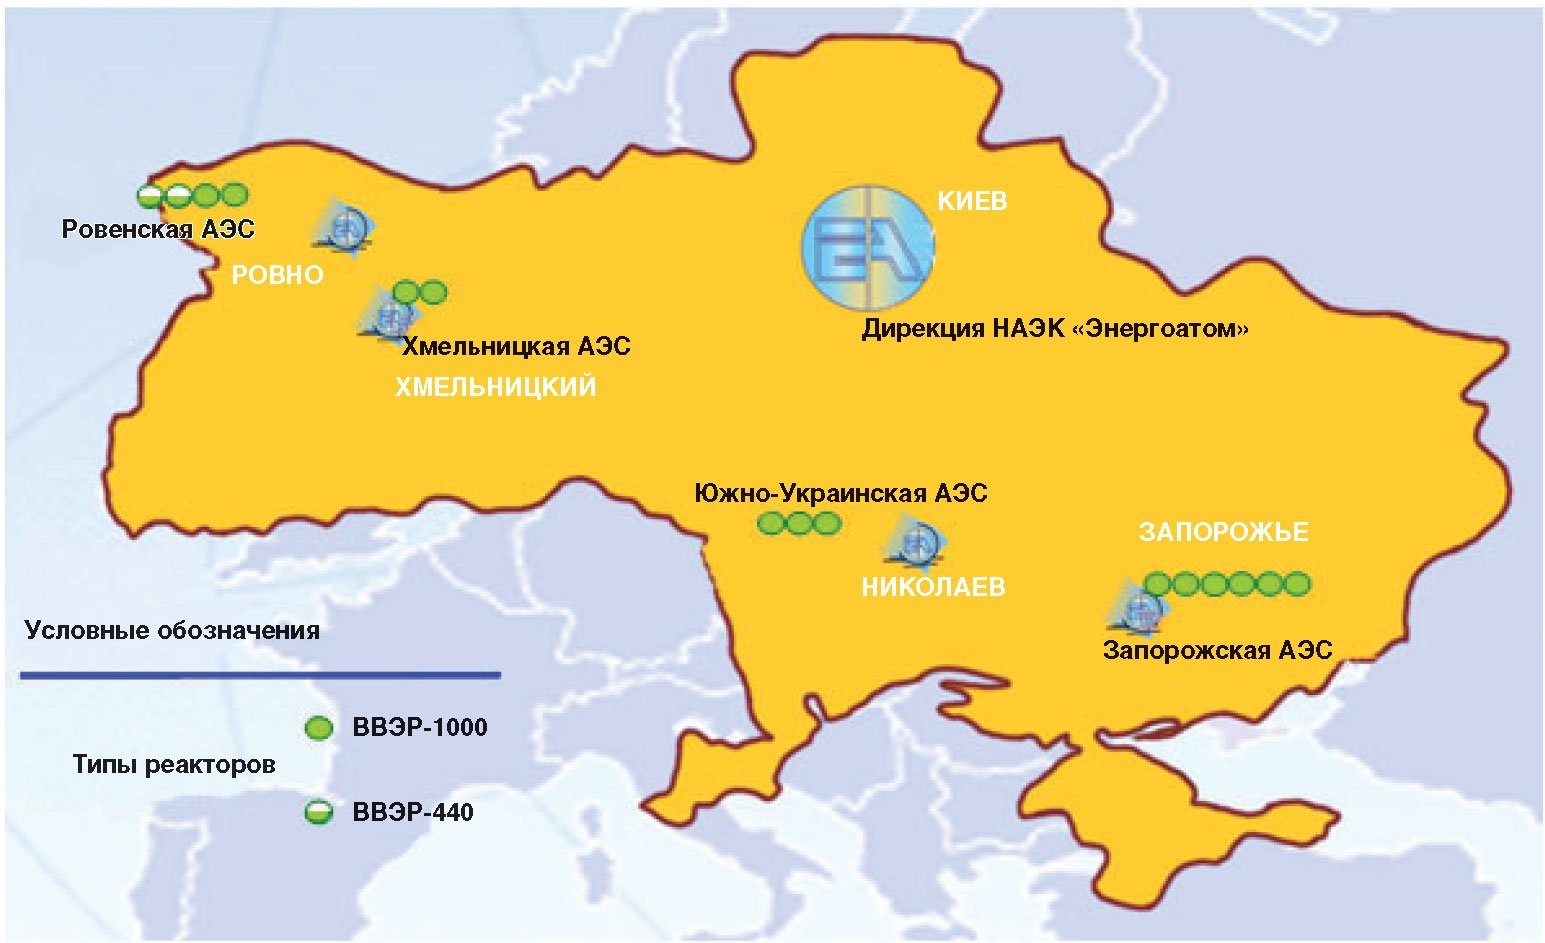 Запорожская аэс на карте где расположена. АЭС Украины на карте. Атомные станции Украины на карте. Атомные электростанции Украины на карте. Атомные станции Украины Южно украинская АЭС.